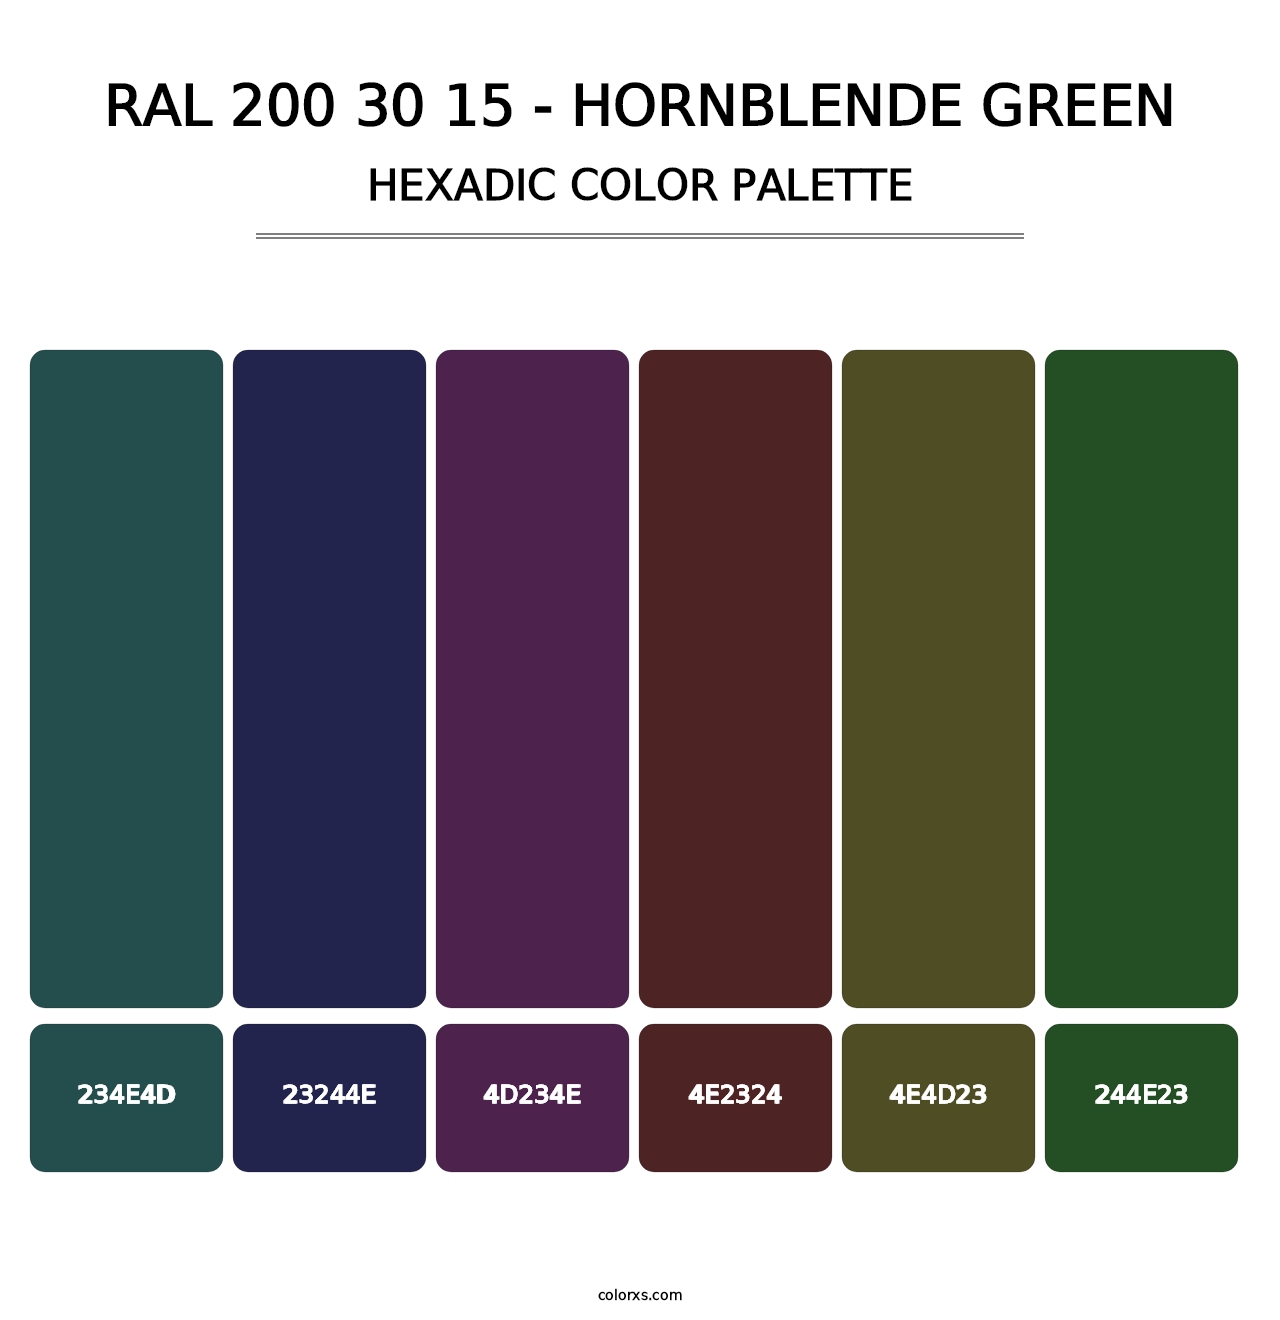 RAL 200 30 15 - Hornblende Green - Hexadic Color Palette